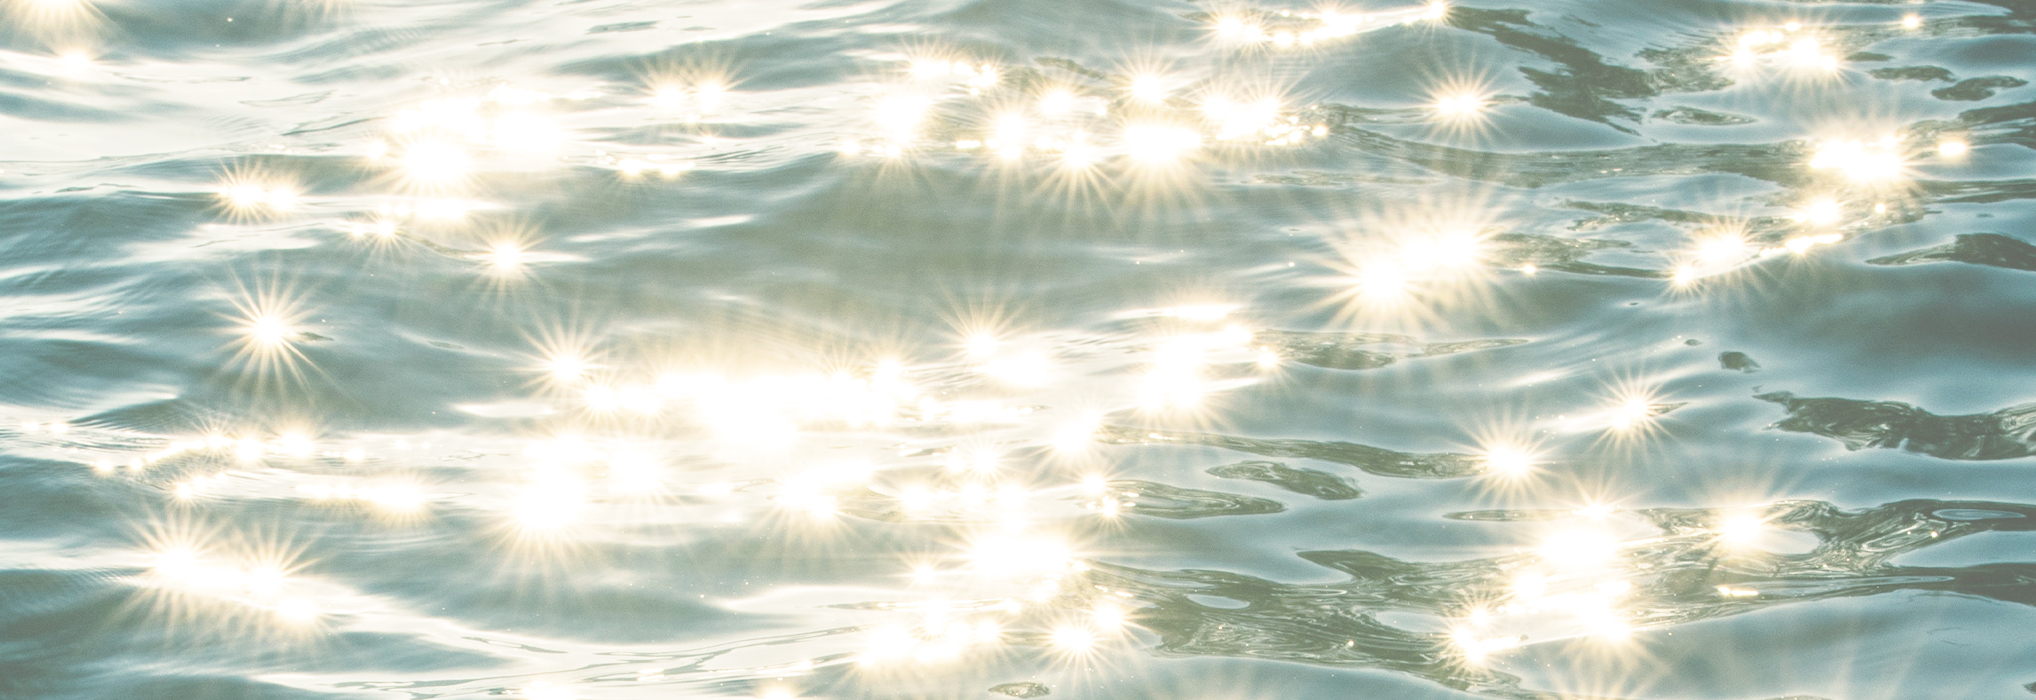 Sunlight on water